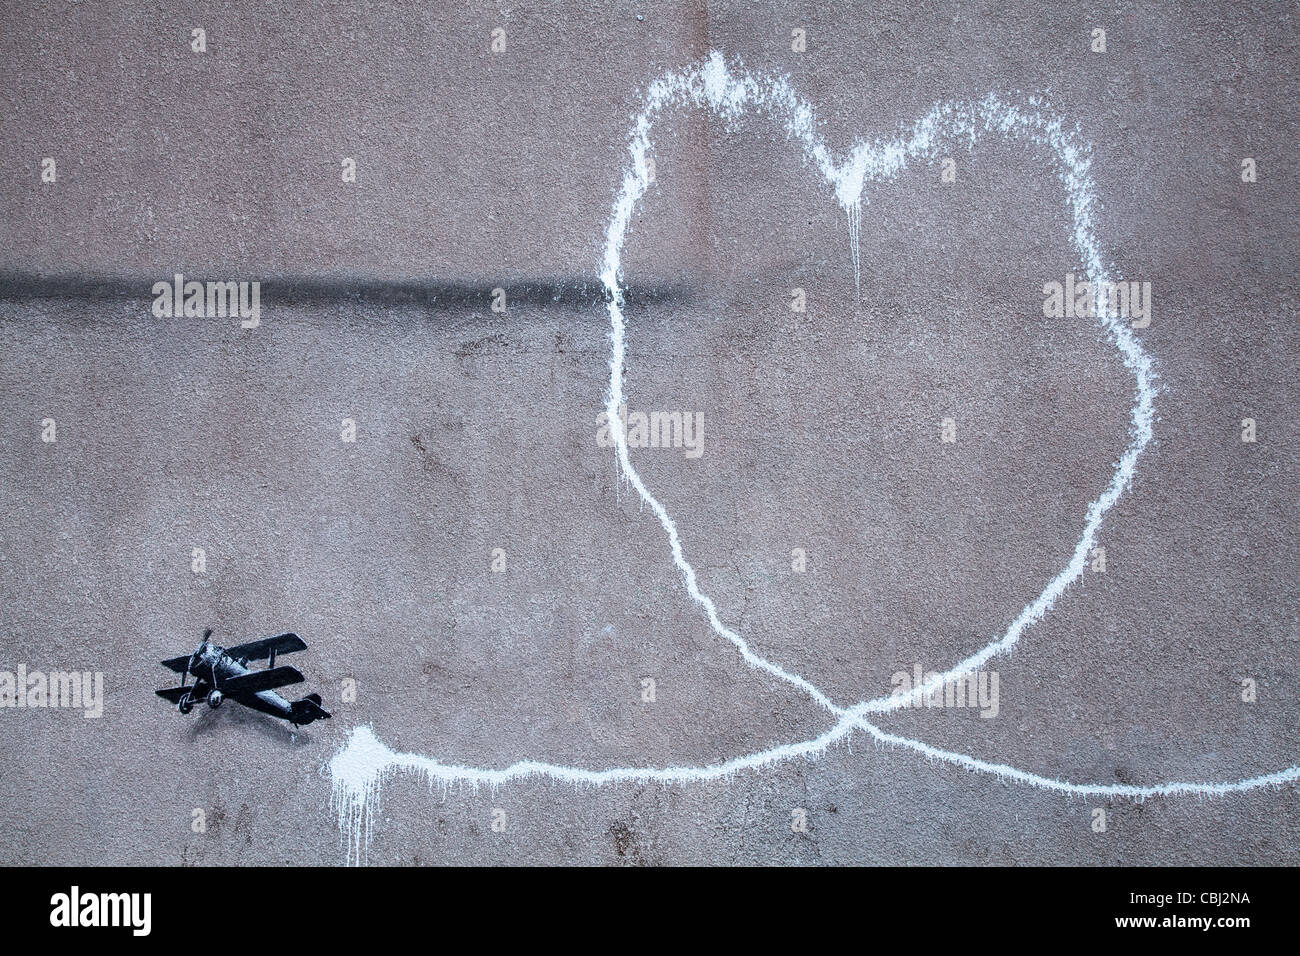 'Liebe Flugzeug' neue Banksy Kunstwerk, trat das Gemälde vermutlich von der Streetart-Künstler Banksy in Stadtzentrum von Liverpool. Es zeigt einen Doppeldecker, eine Spur von Rauch, ist an der Wand in Rumford Street, Liverpool. Über Nacht 10. Dezember 2011 erschienen. Stockfoto